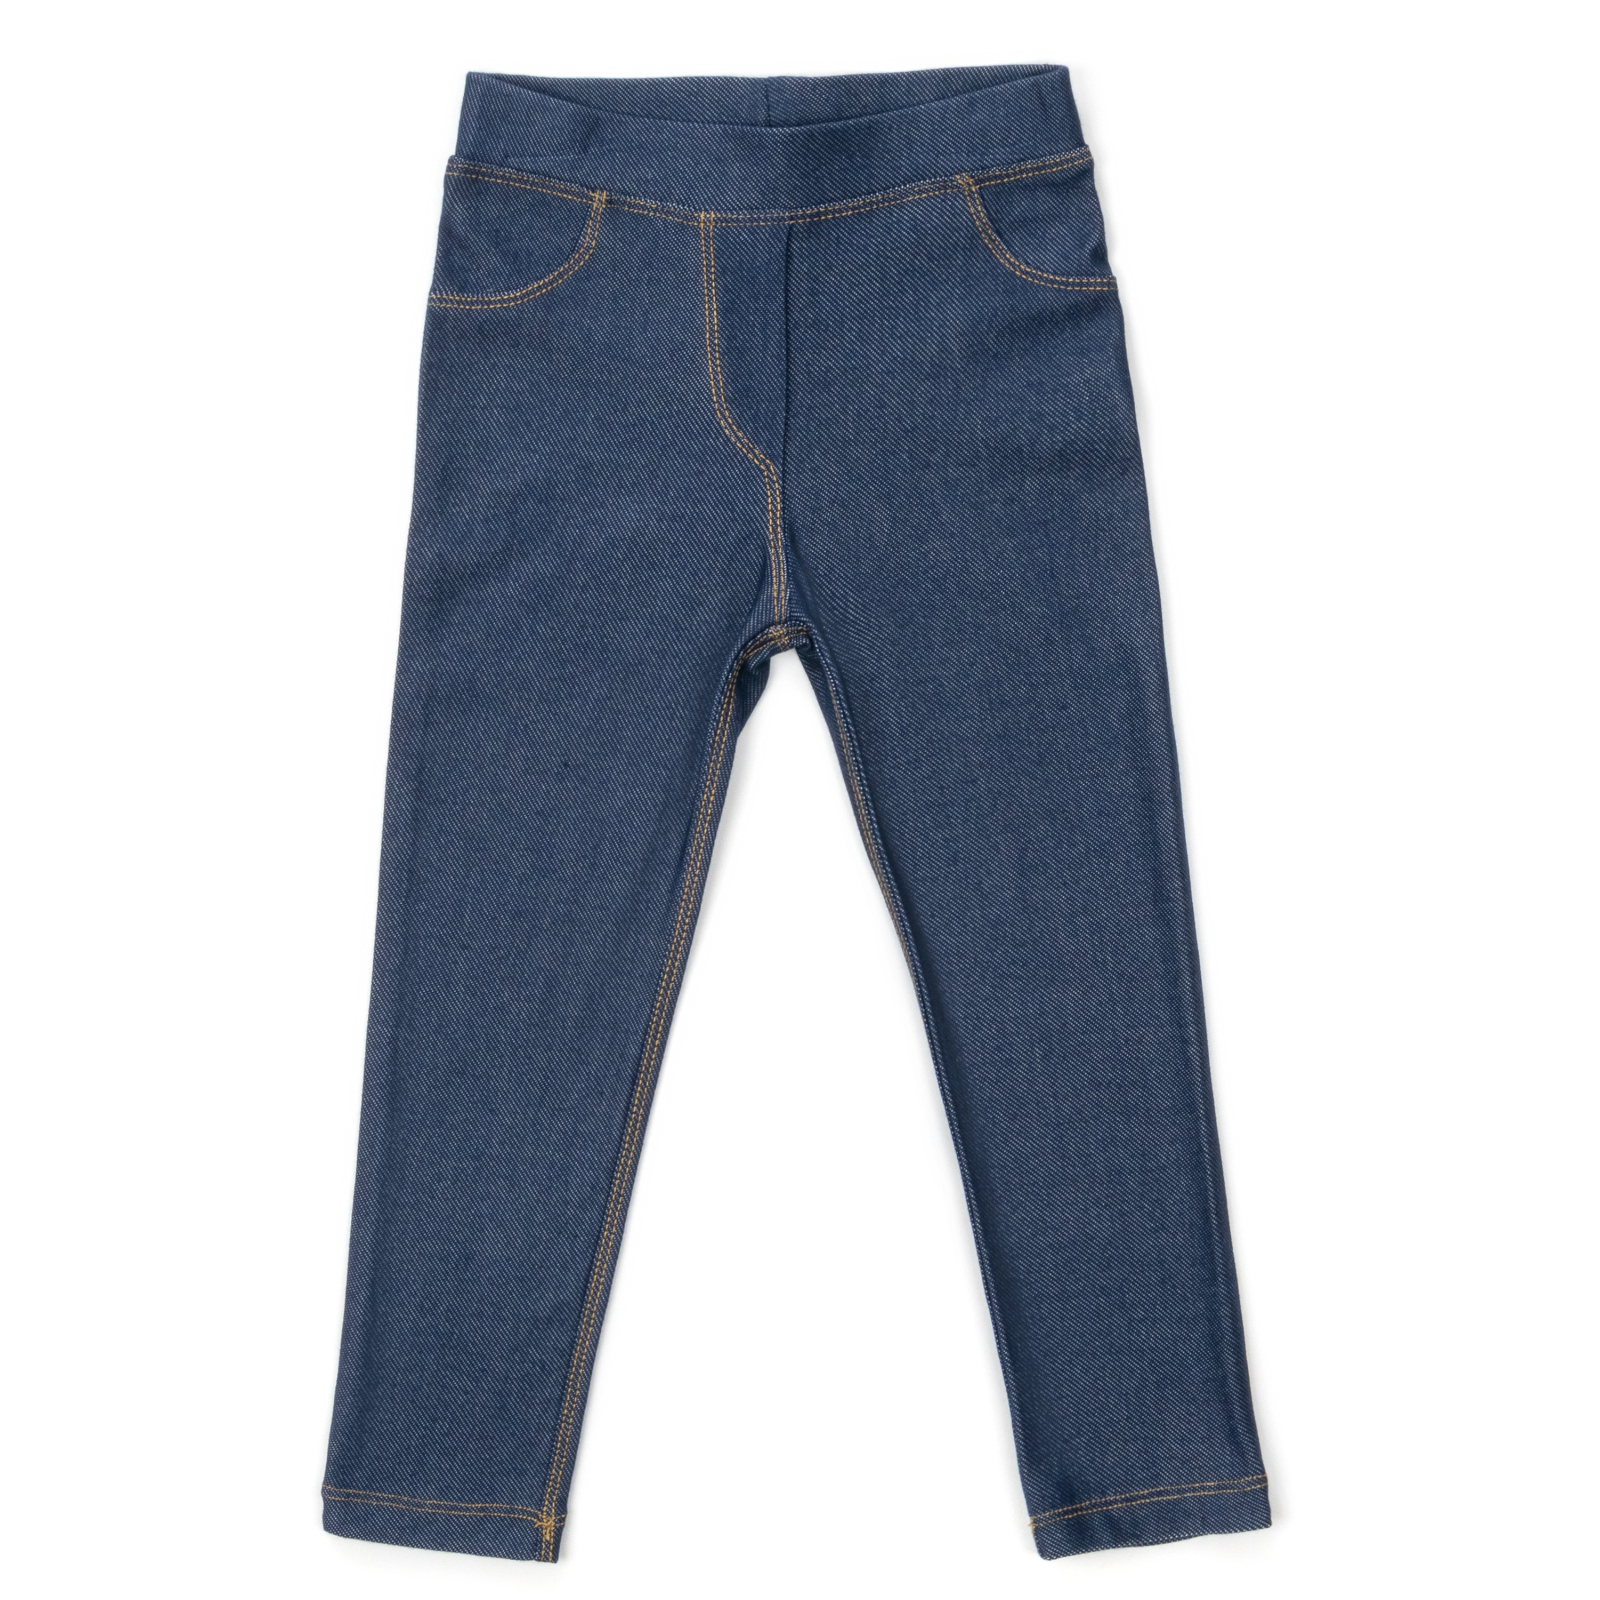 Лосини Breeze трикотажні (4416-122G-jeans)